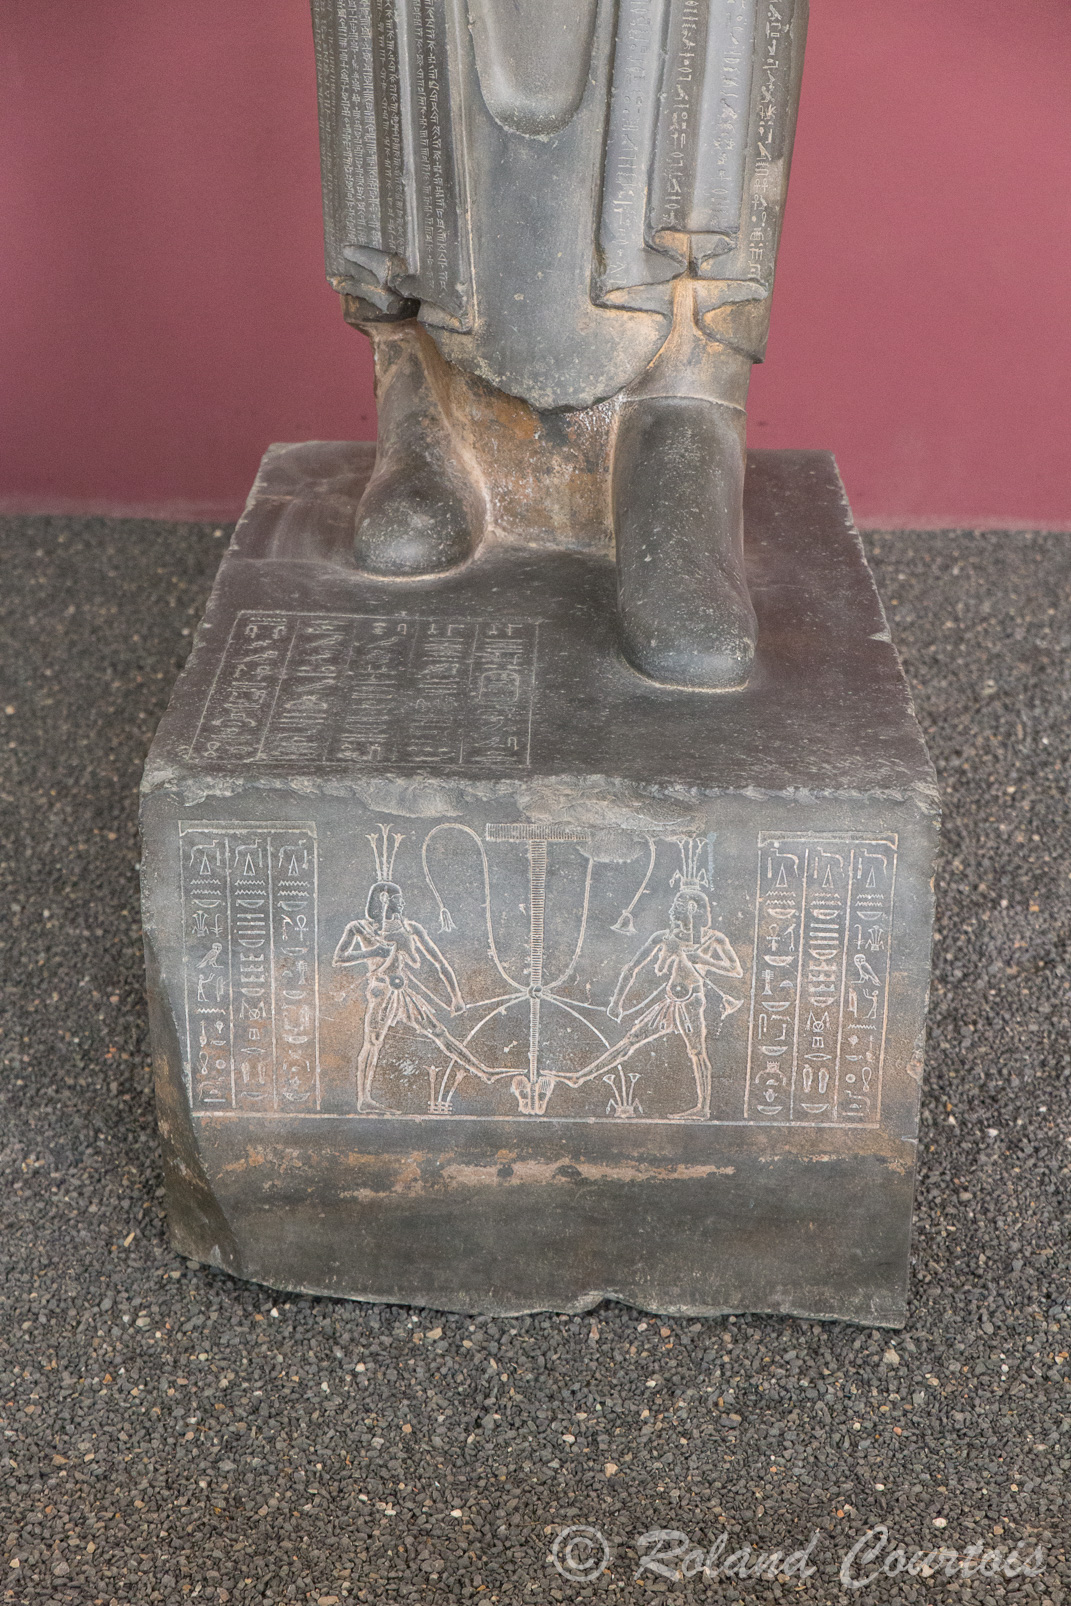 Musée archéologique Téhéran: Cette statue de Darius Ier a été découverte à Suse en 1972,  C'est une des rares statues en ronde bosse de l'époque achéménide figurant un souverain.